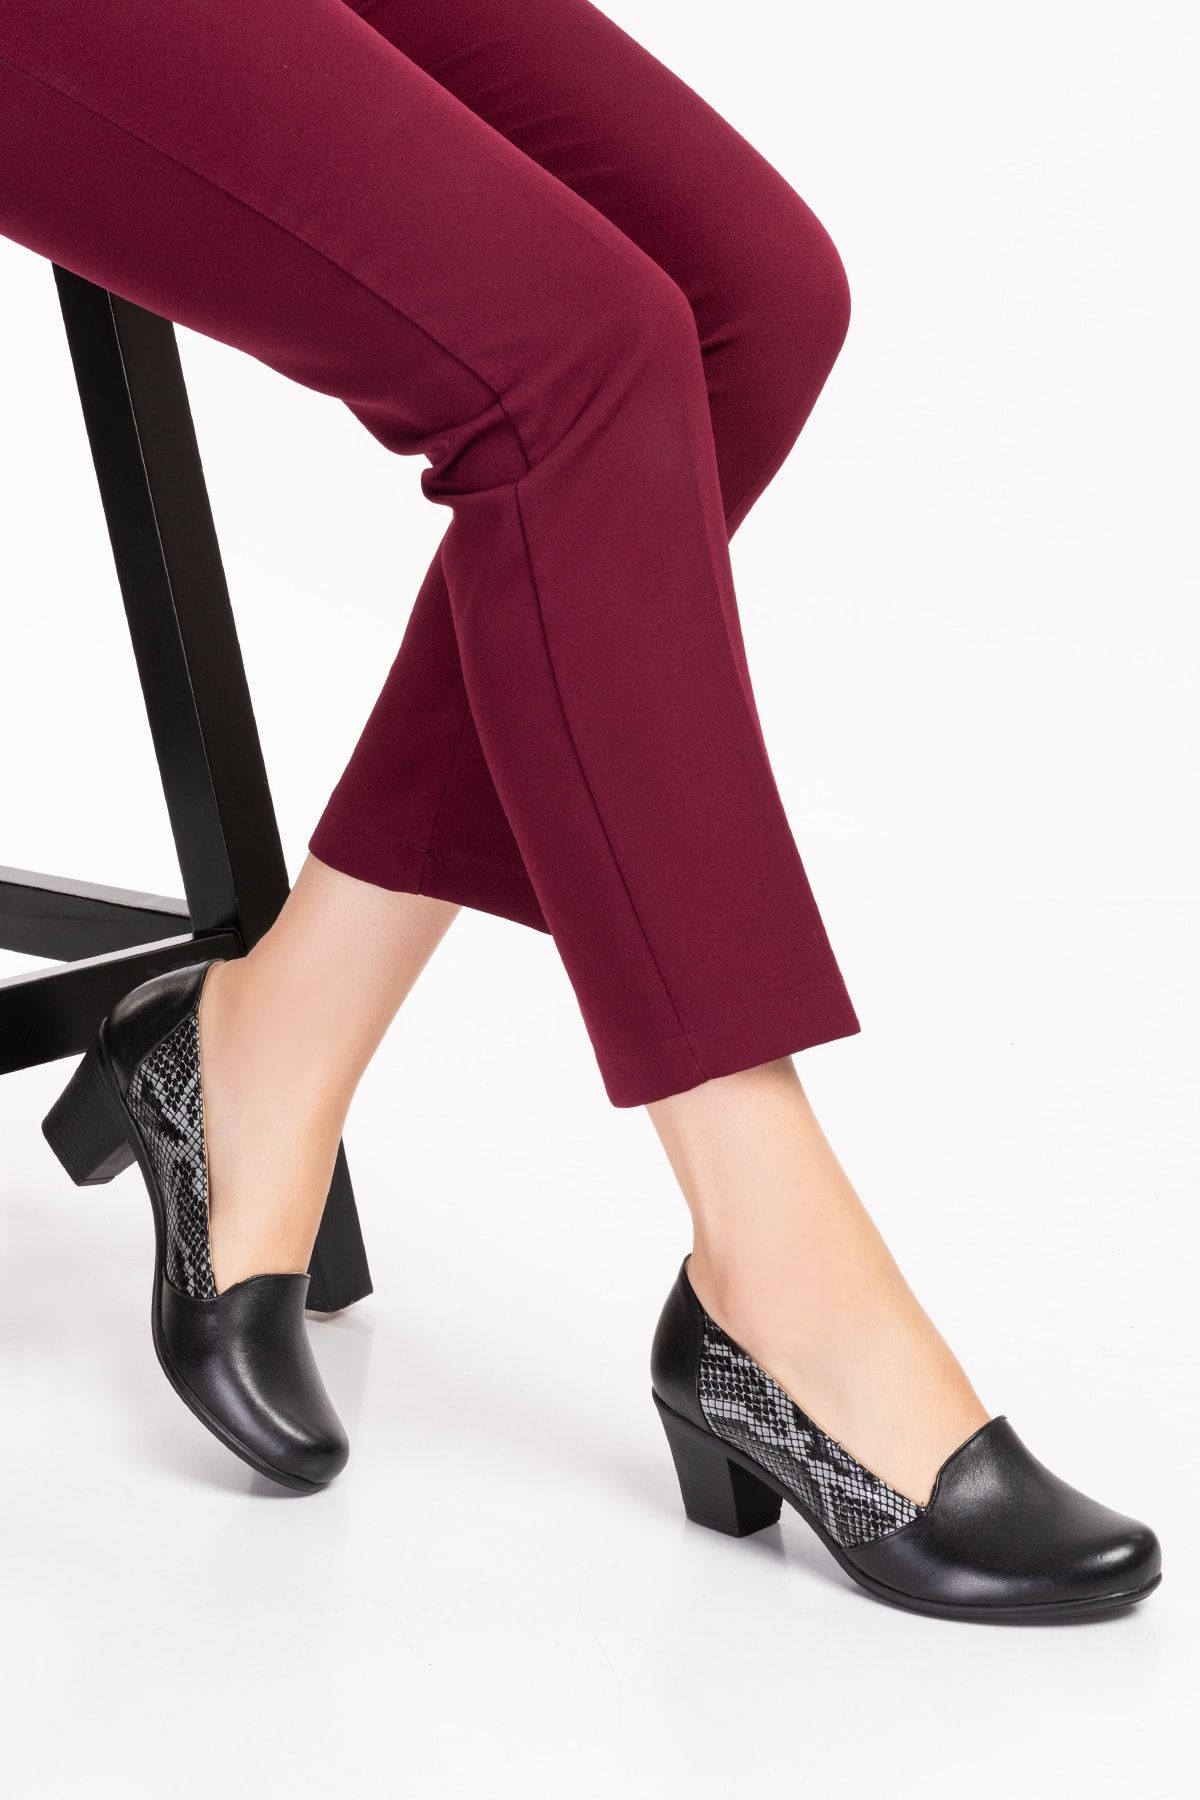 Akgün Terlik Kadın Hakiki Deri Siyah Yılan Detaylı Topuklu Ayakkabı